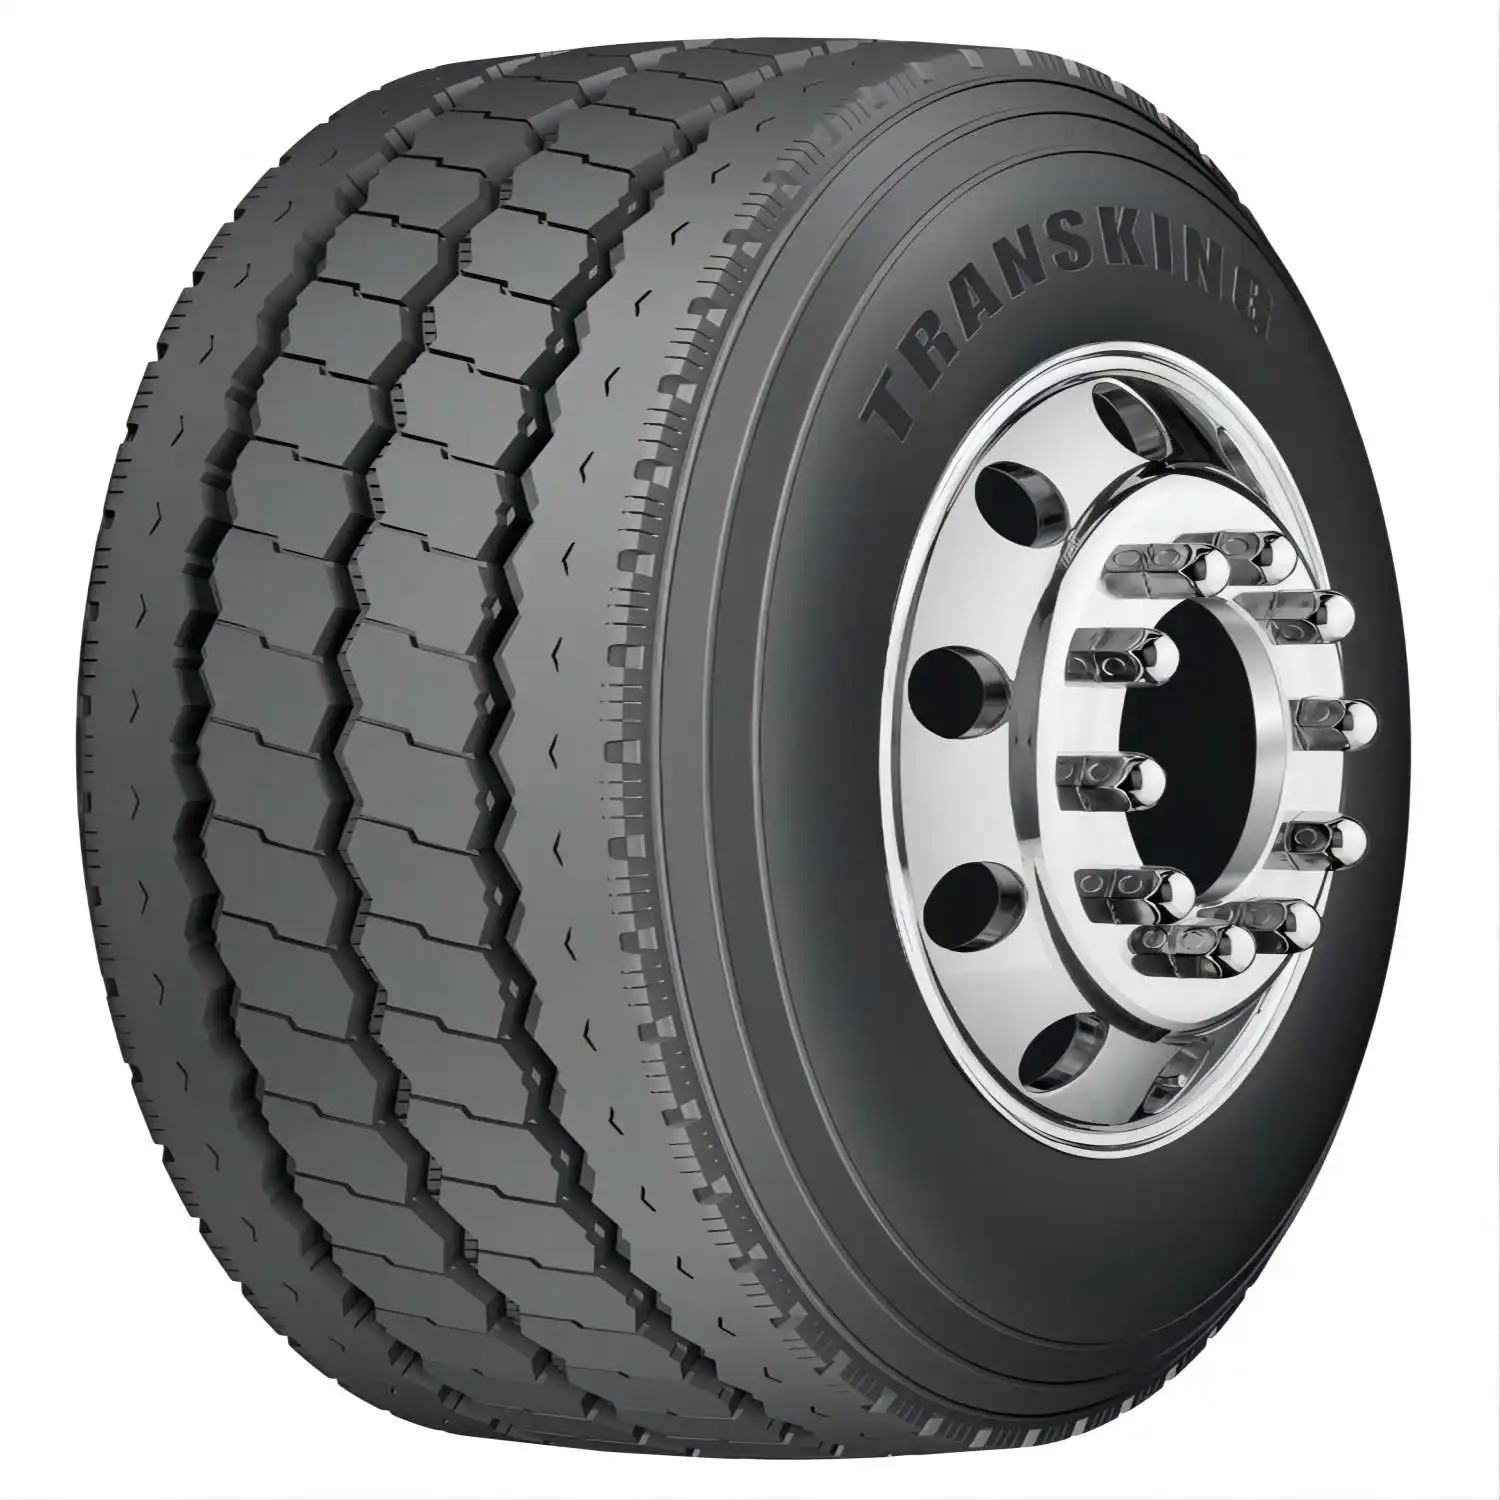 Tutti gli pneumatici radiali d'acciaio del camion 11 r22.5 315/80 r22.5 1 200 r24 con l'alta qualità tutti i buoni profitti di posizione